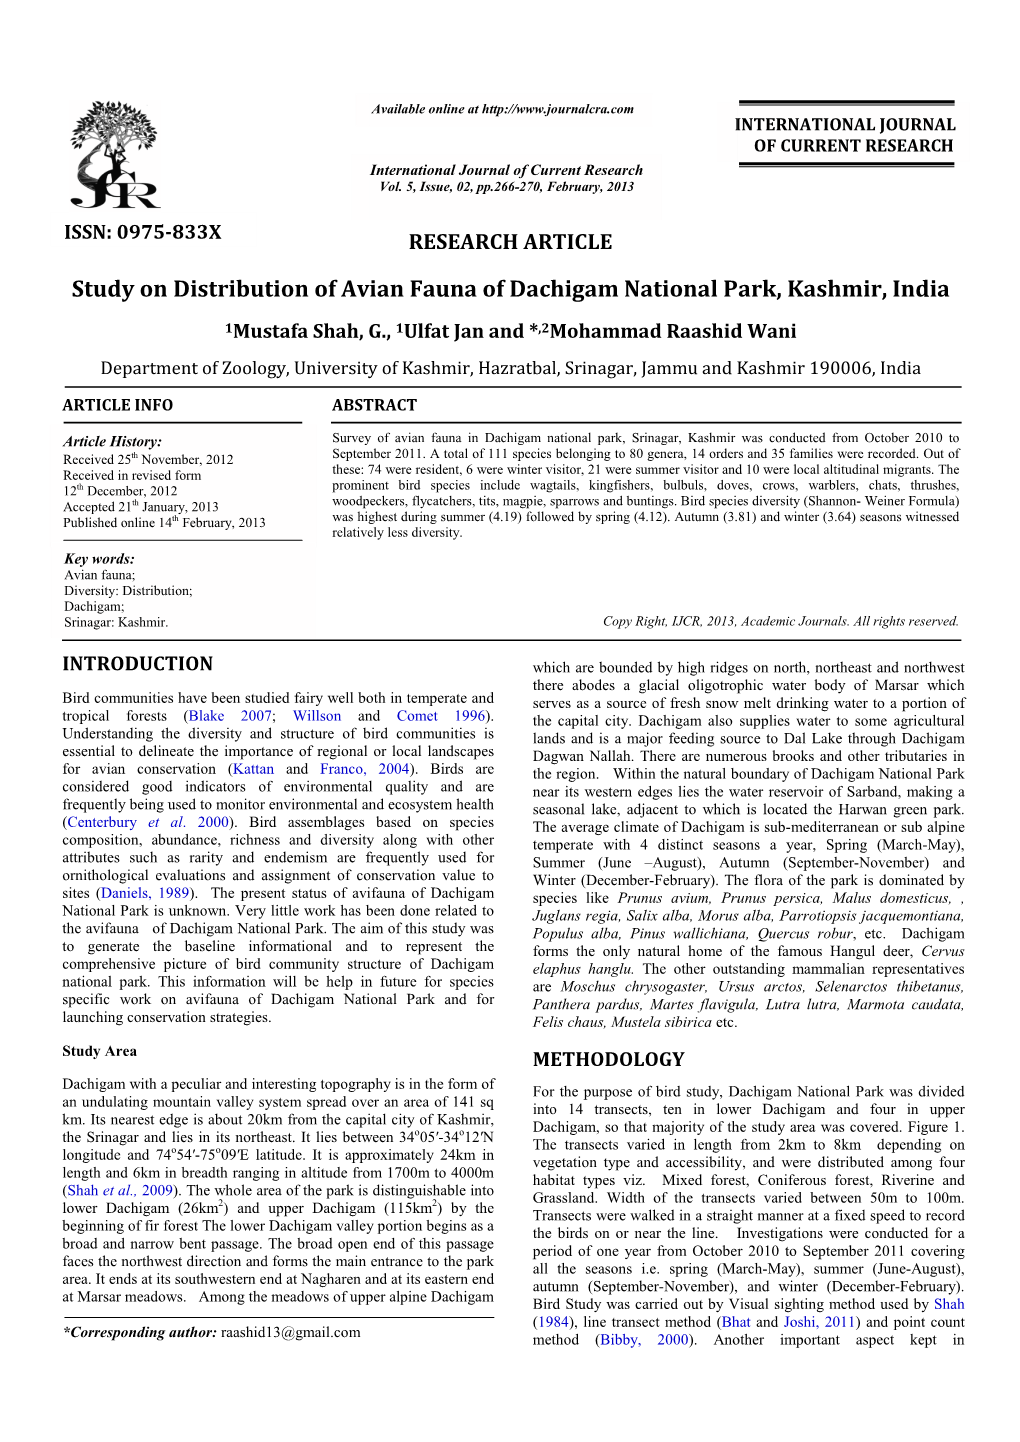 Study on Distribution of Avian Fauna Avian Fauna of Dachigam National